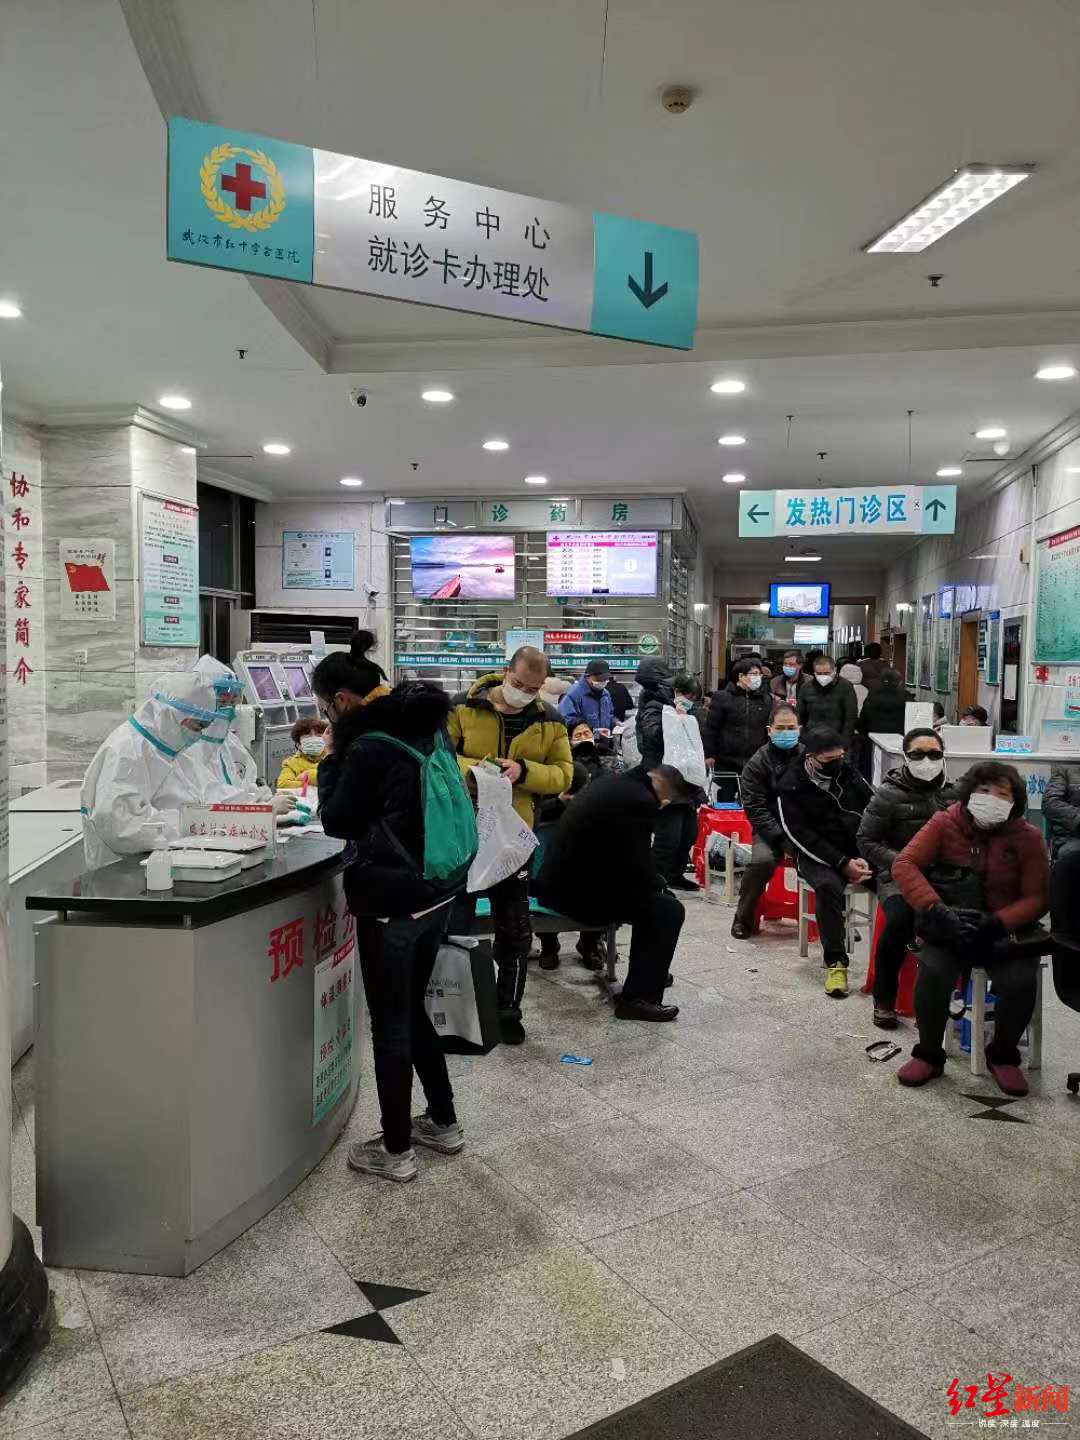  ↑曾先生和妻子1月23日半夜曾到武汉市红十字会医院就医